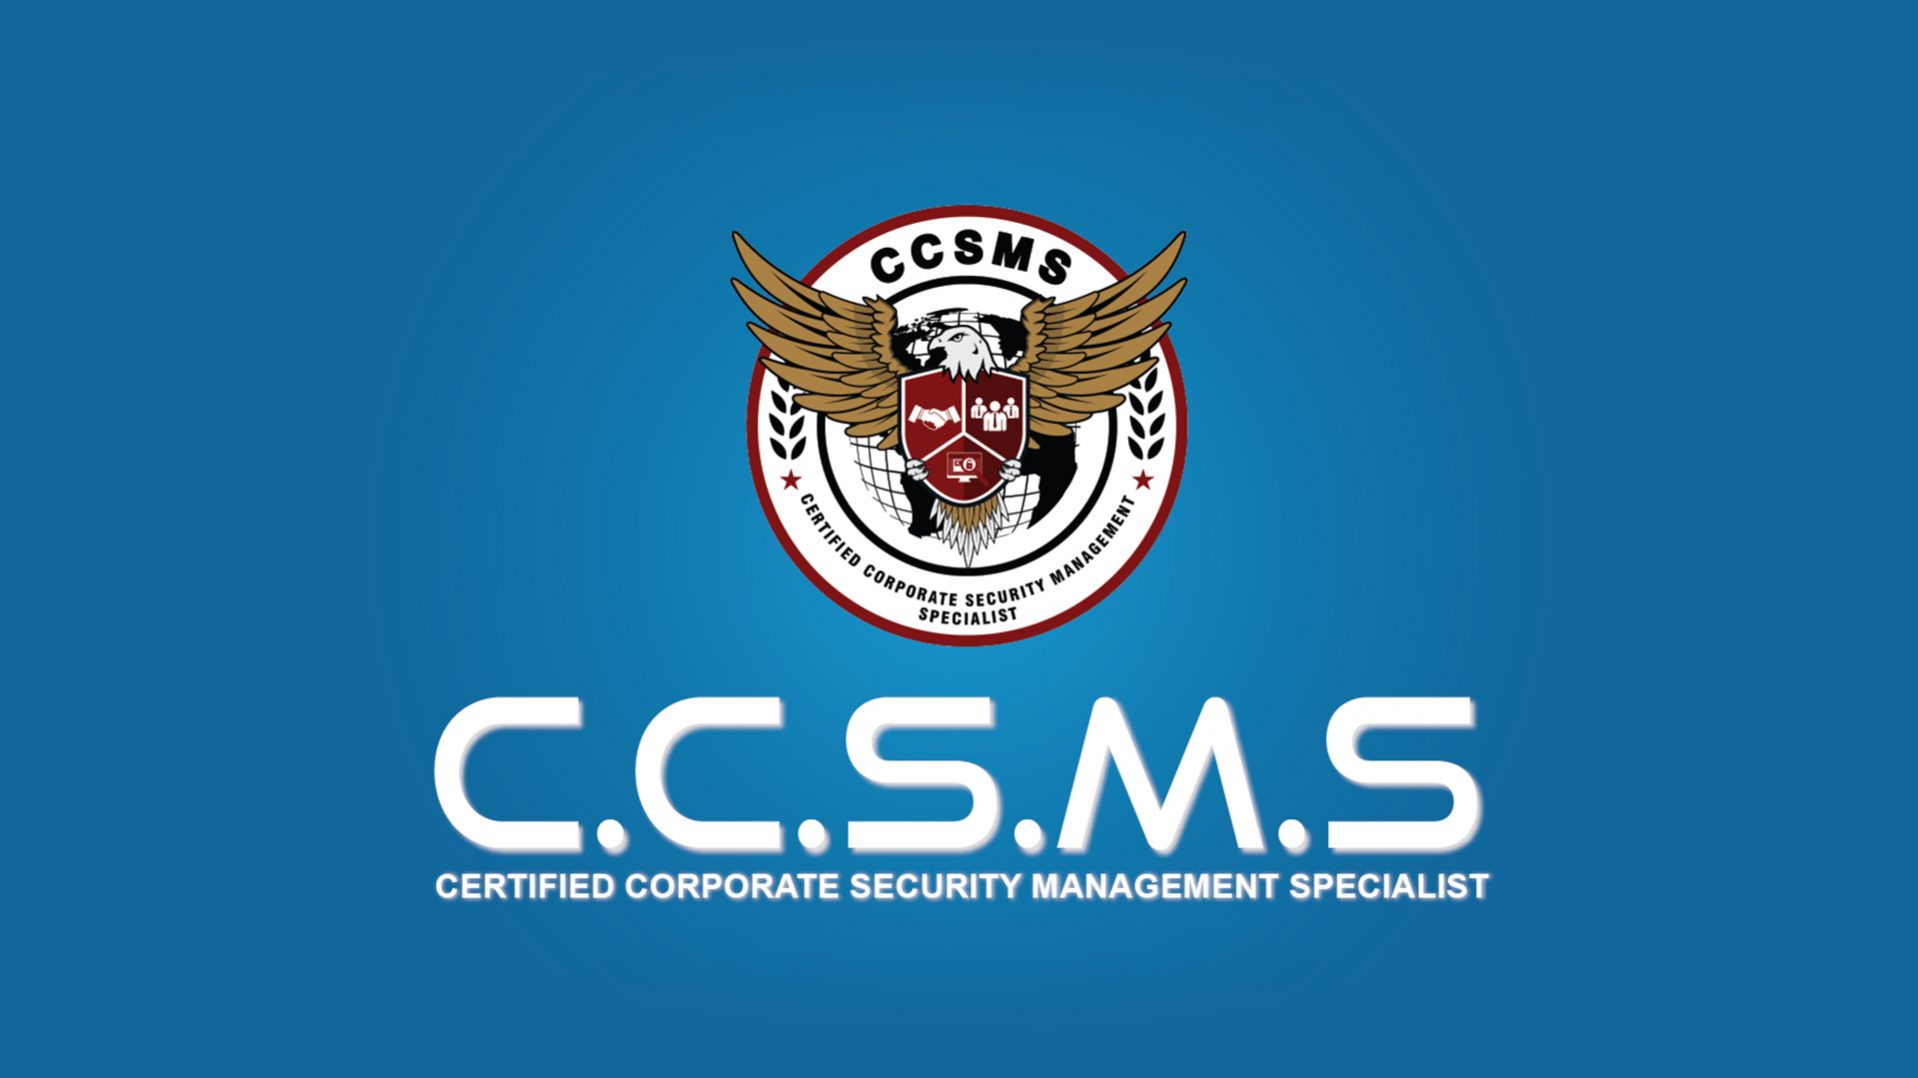 CCSMS